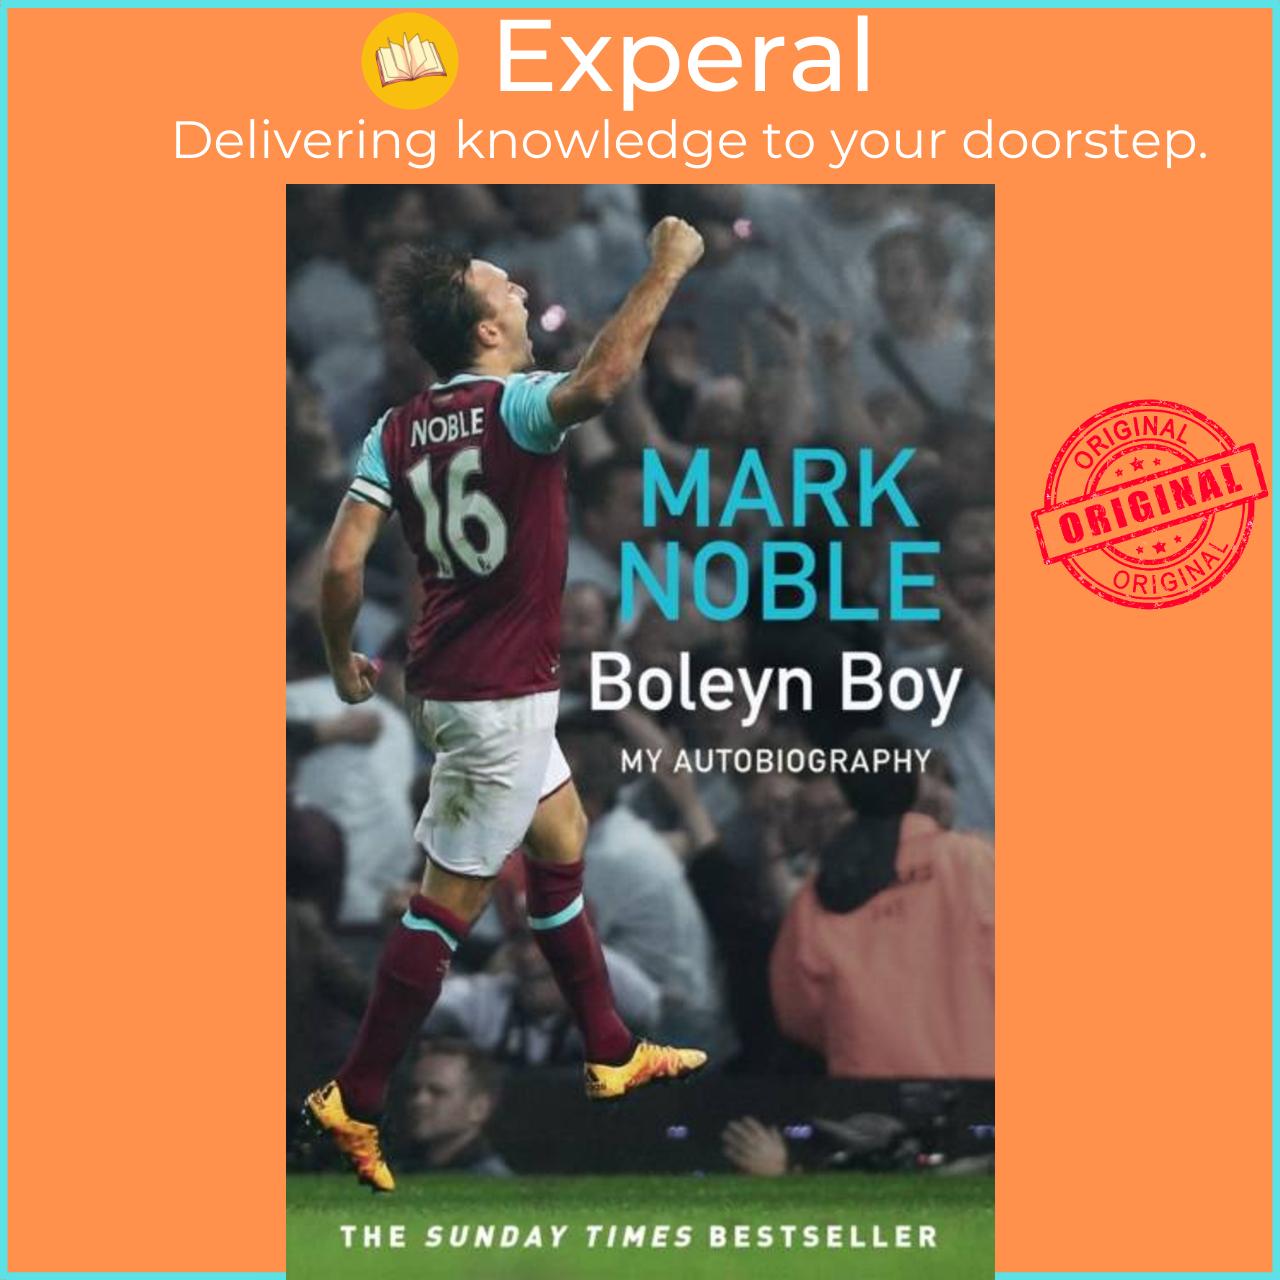 Sách - Boleyn Boy - My Autobiography by Mark Noble (UK edition, paperback)